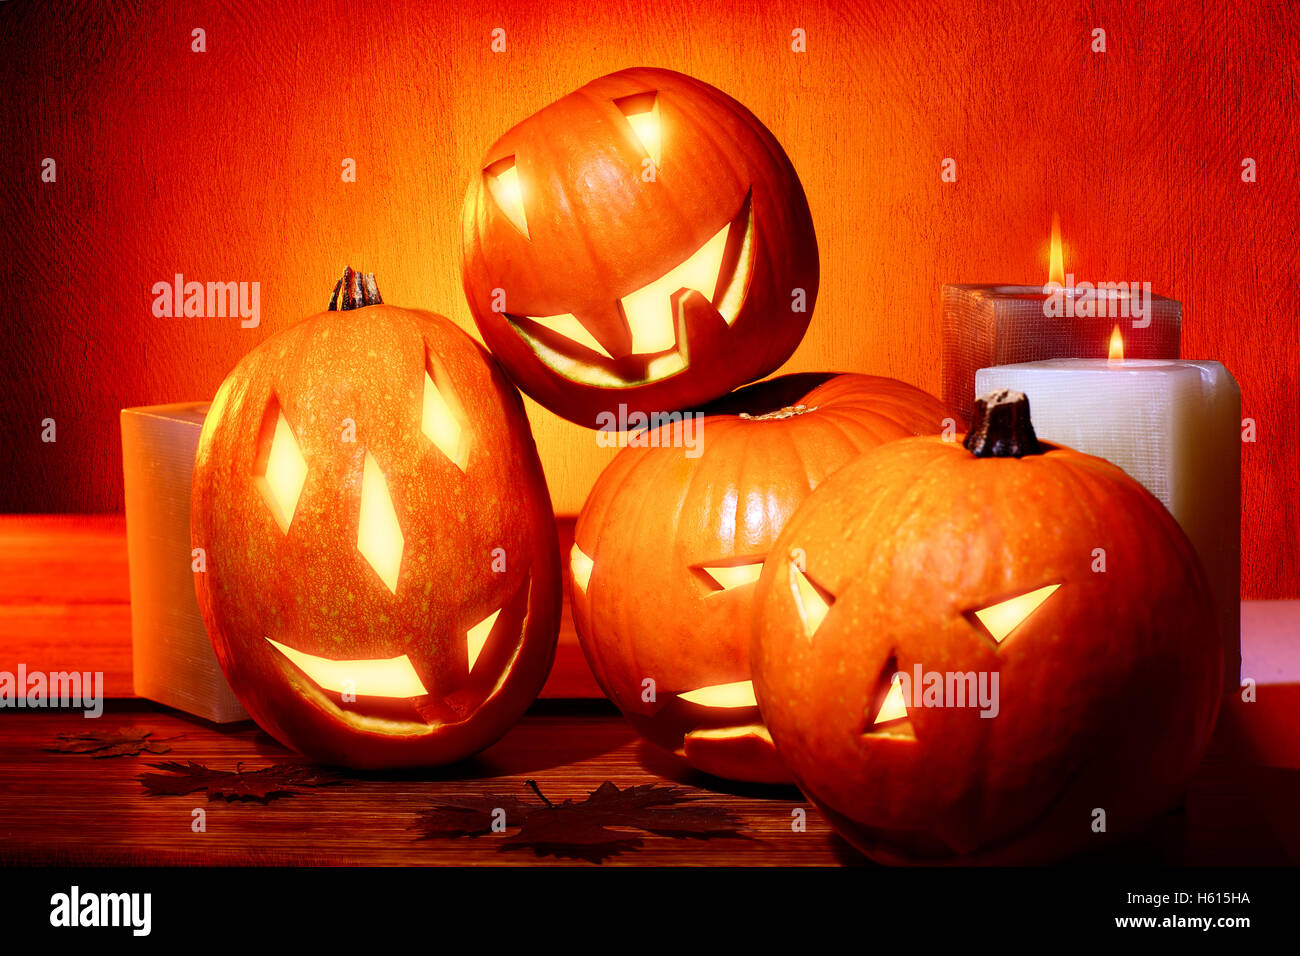 Elegante decoración de Halloween, calabazas talladas con caras tenebrosas y velas como decoración para la fiesta de Halloween Foto de stock